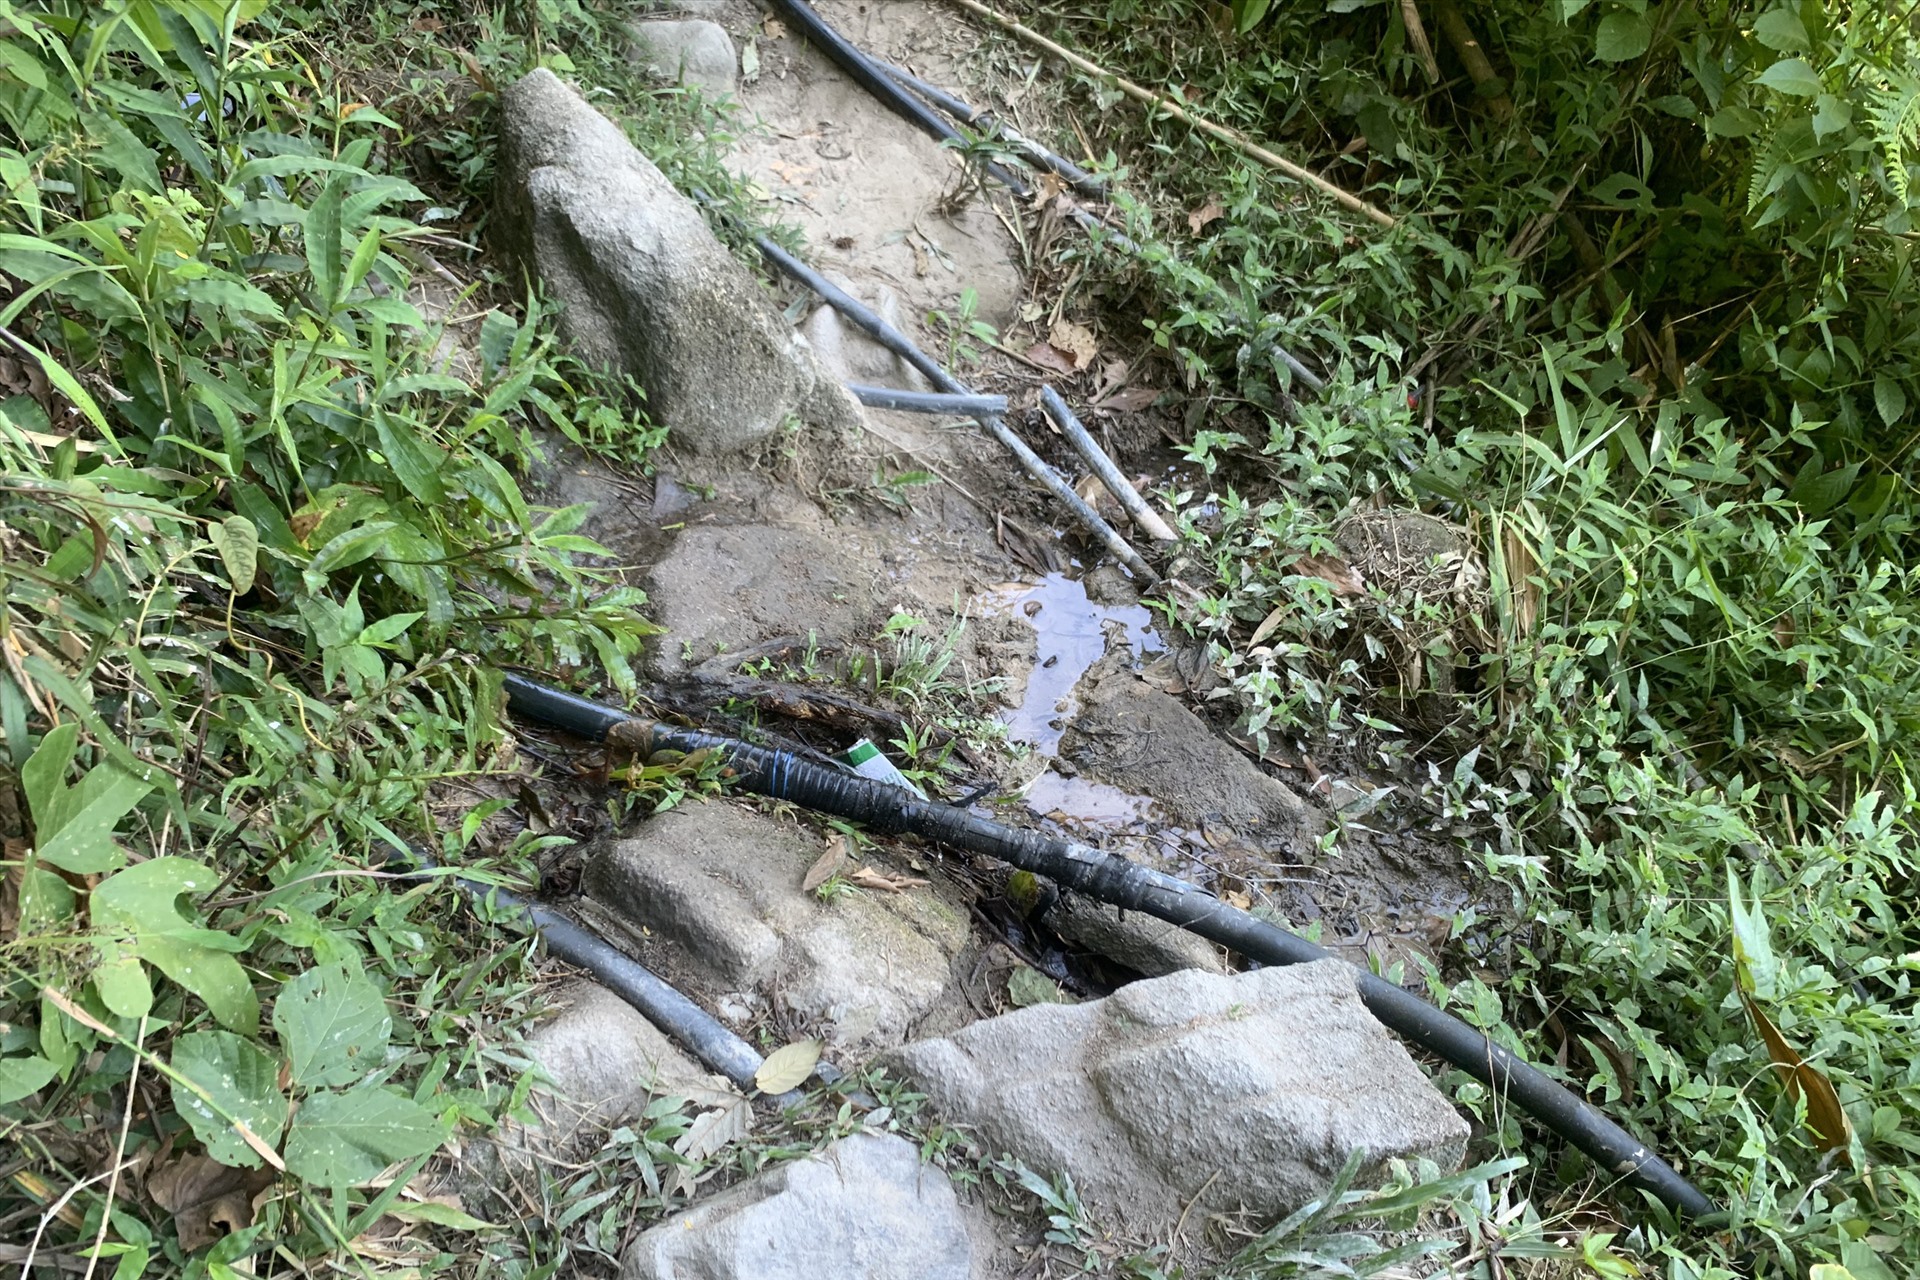 Đường ống nước người dân xã Quang Thọ tự bắt từ trên núi về để dùng khi nhà máy nước sạch hư hỏng không cấp được nước nữa. Ảnh: Trần Tuấn.